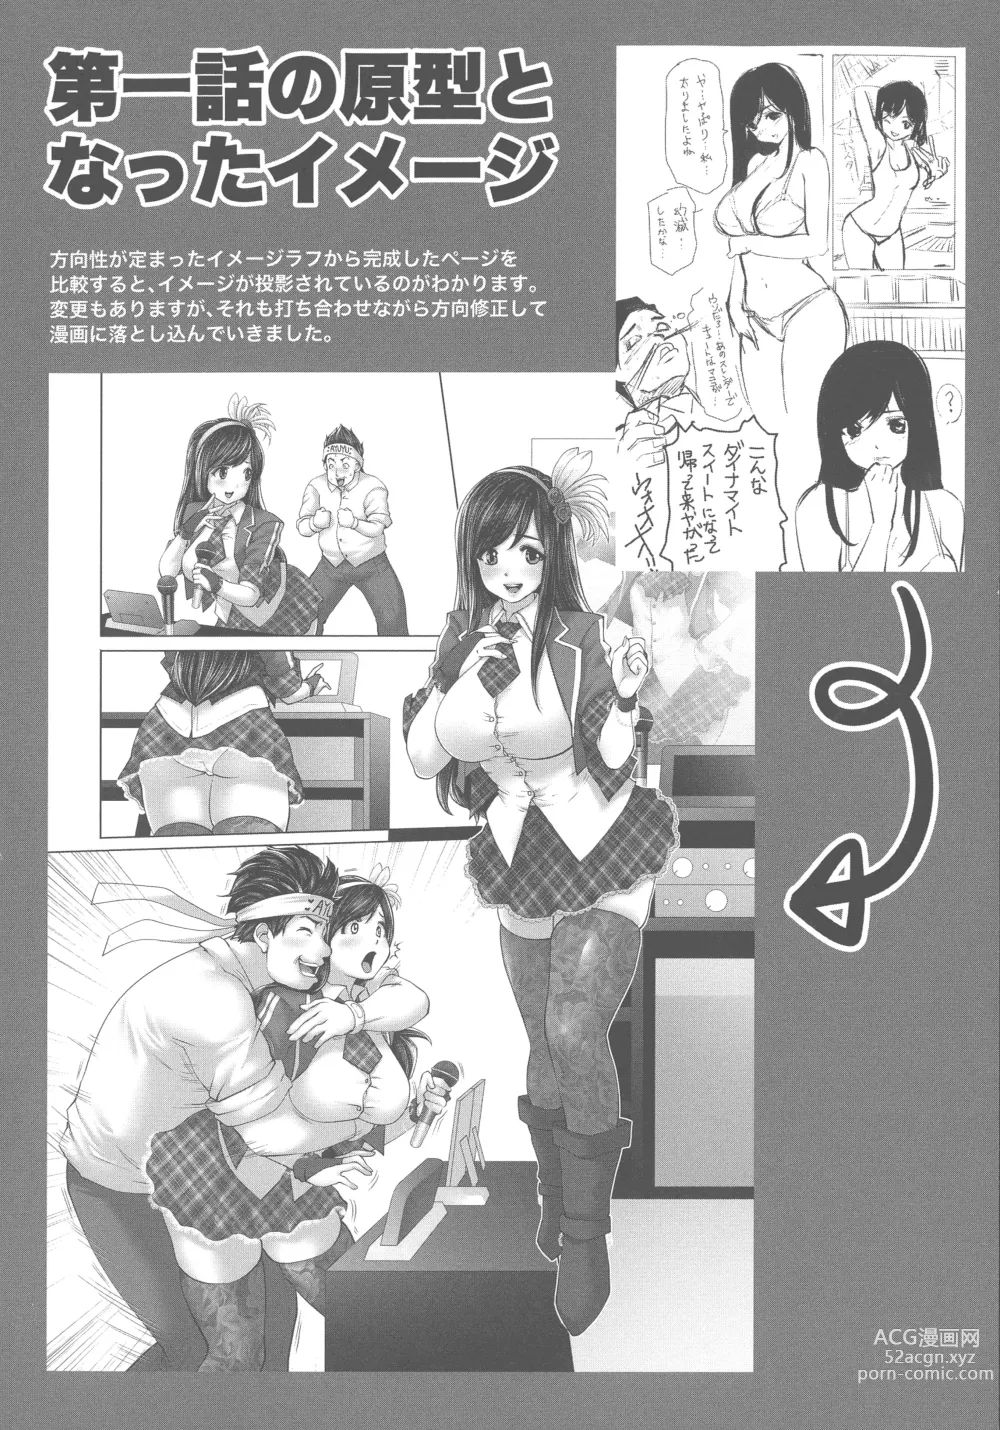 Page 214 of manga Idol Cum!